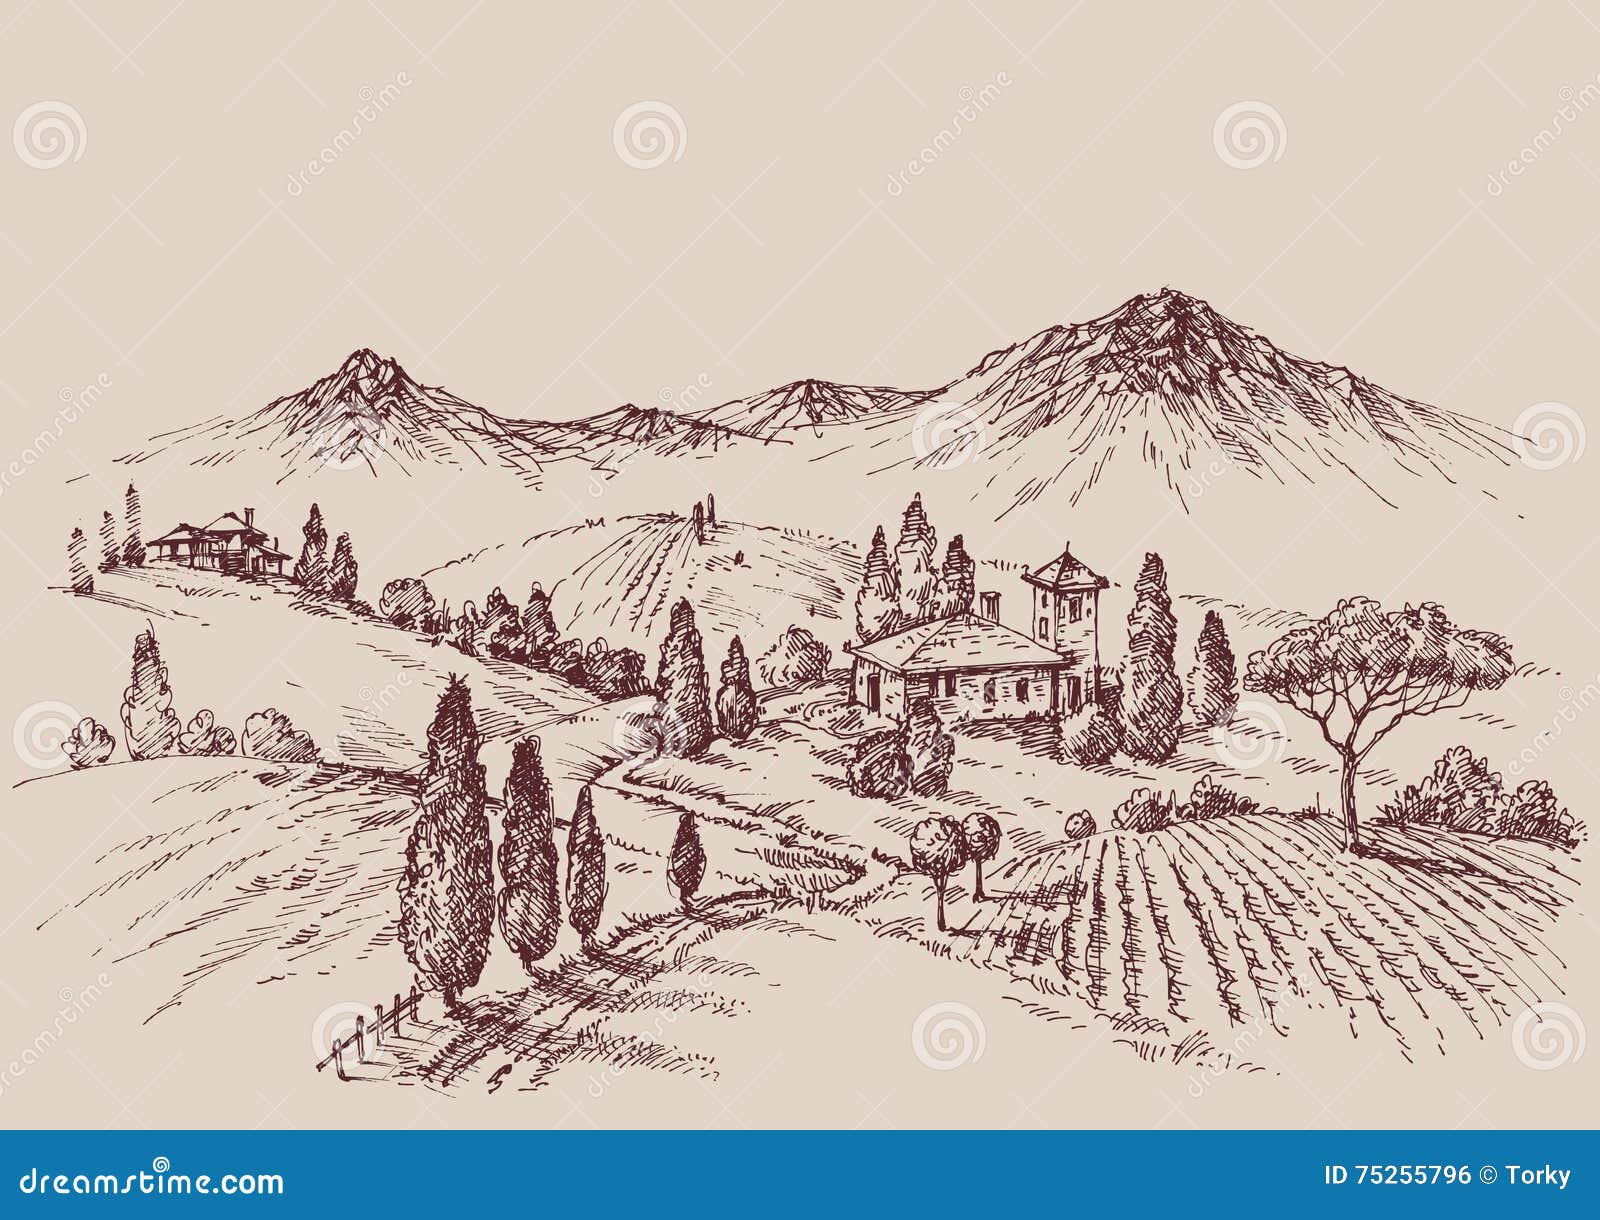 vineyard sketch